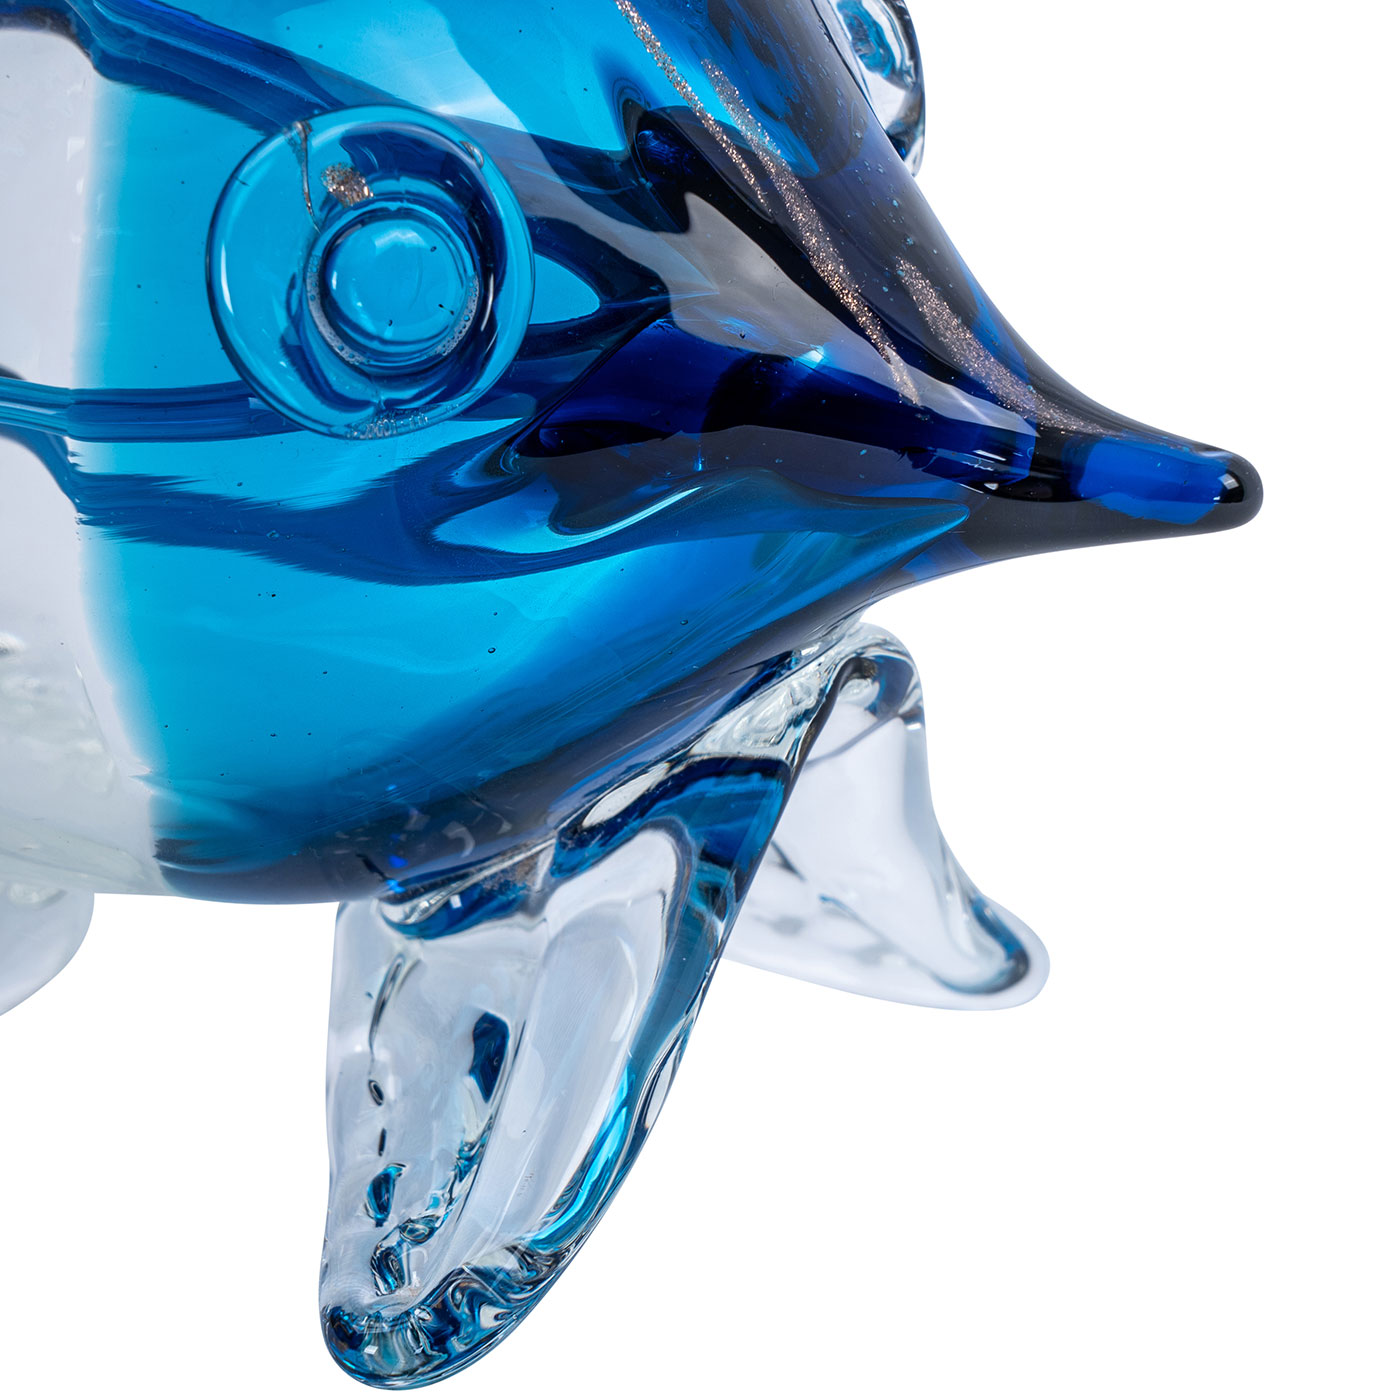 Deko Fisch H19cm Glas Skulptur Tischdeko Maritim Deko Aufsteller Glasfigur Blau